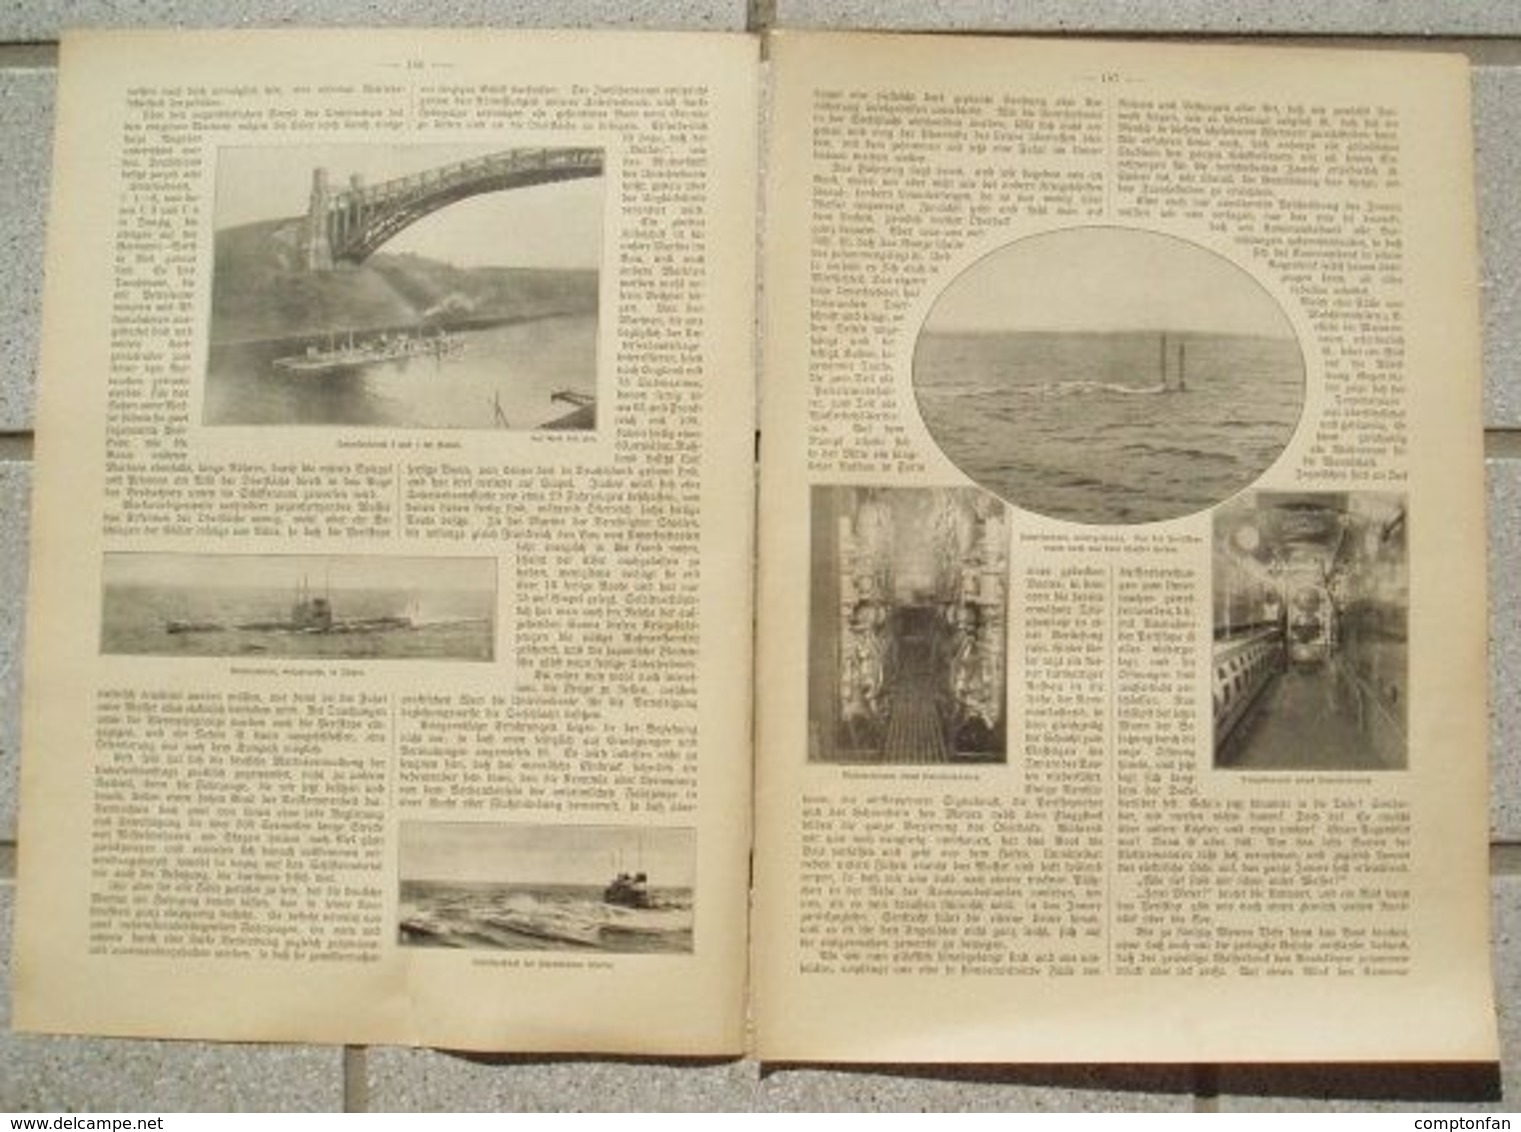 A102 074 Unterseeboote Vulkan Werft Bremen Artikel Mit 10 Bildern Von 1911 !! - Schiffe